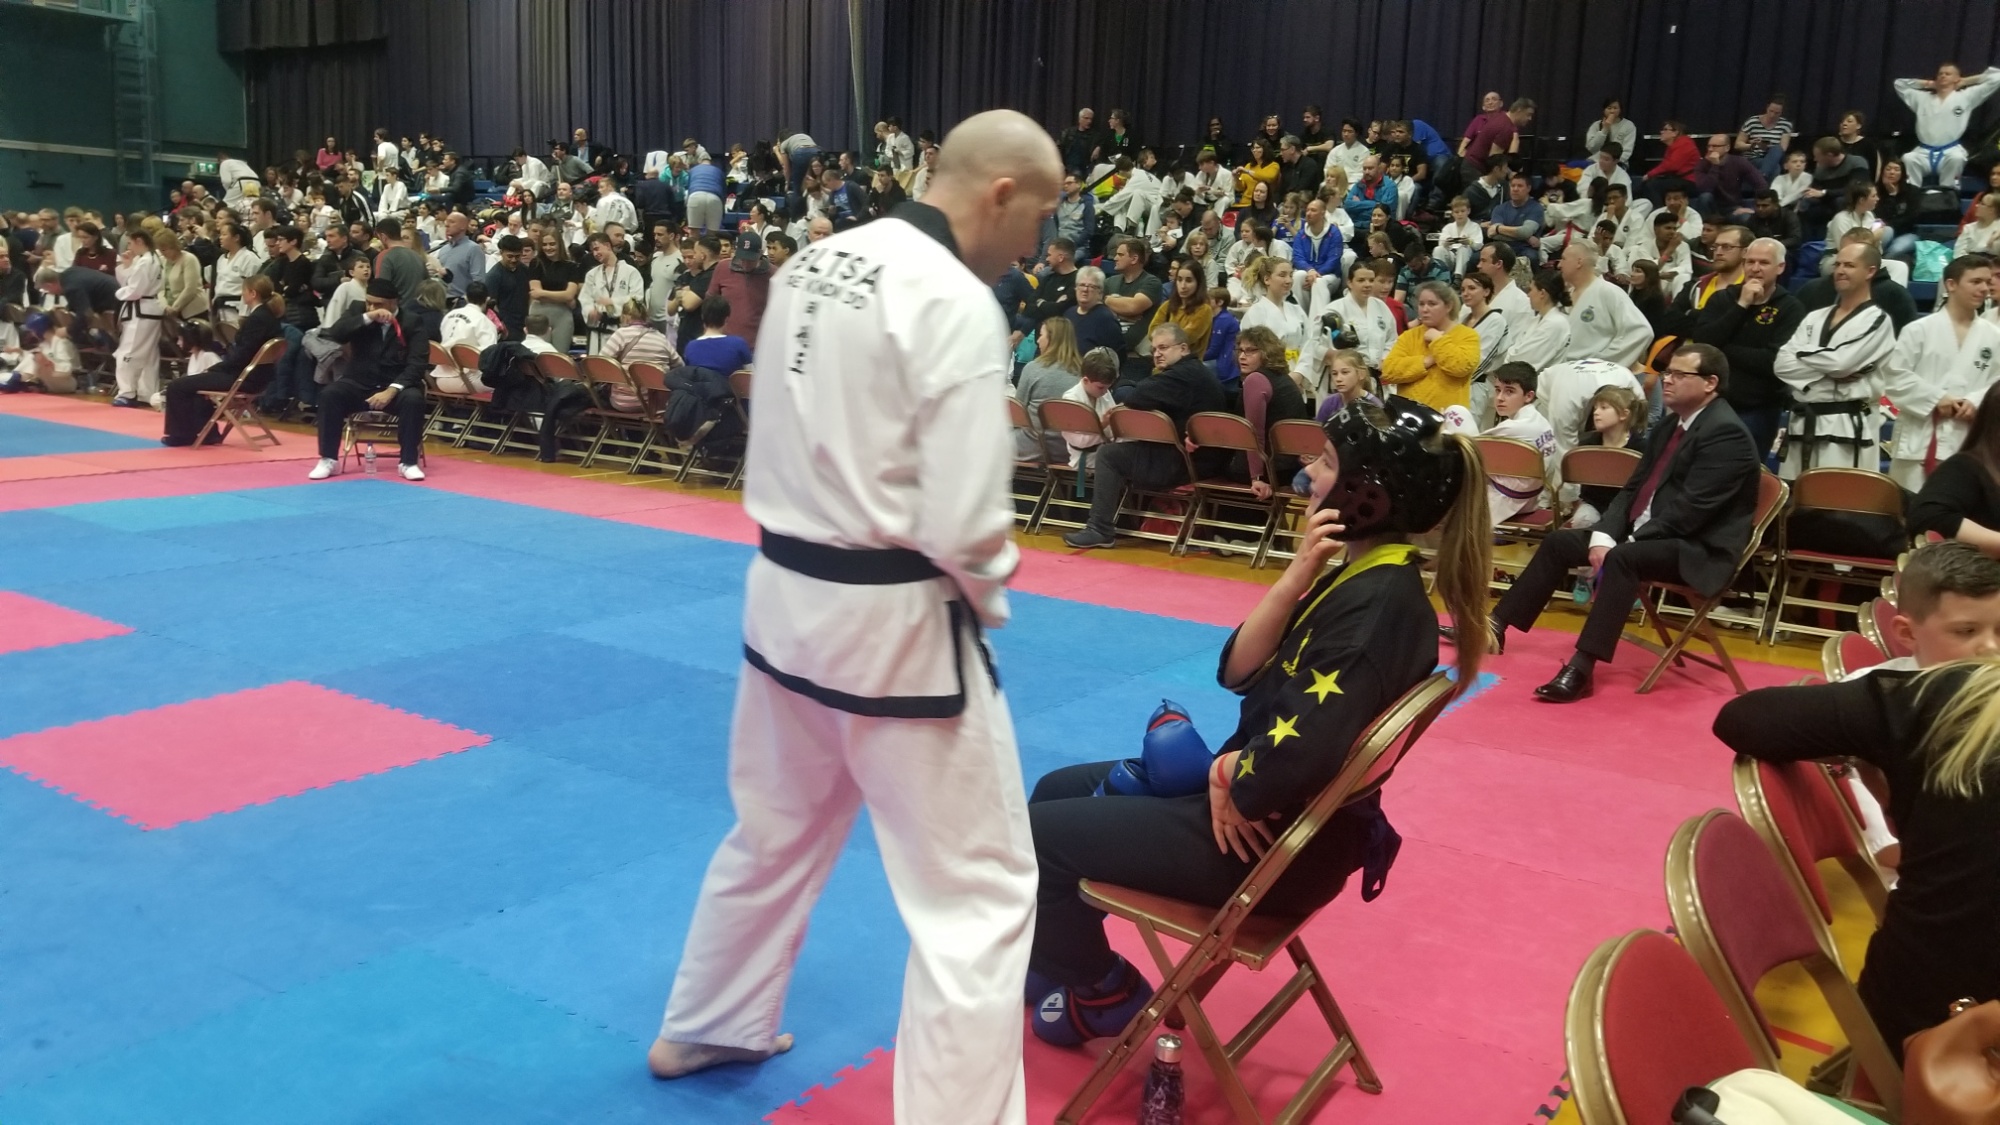 Anna at the Taekwondo competition